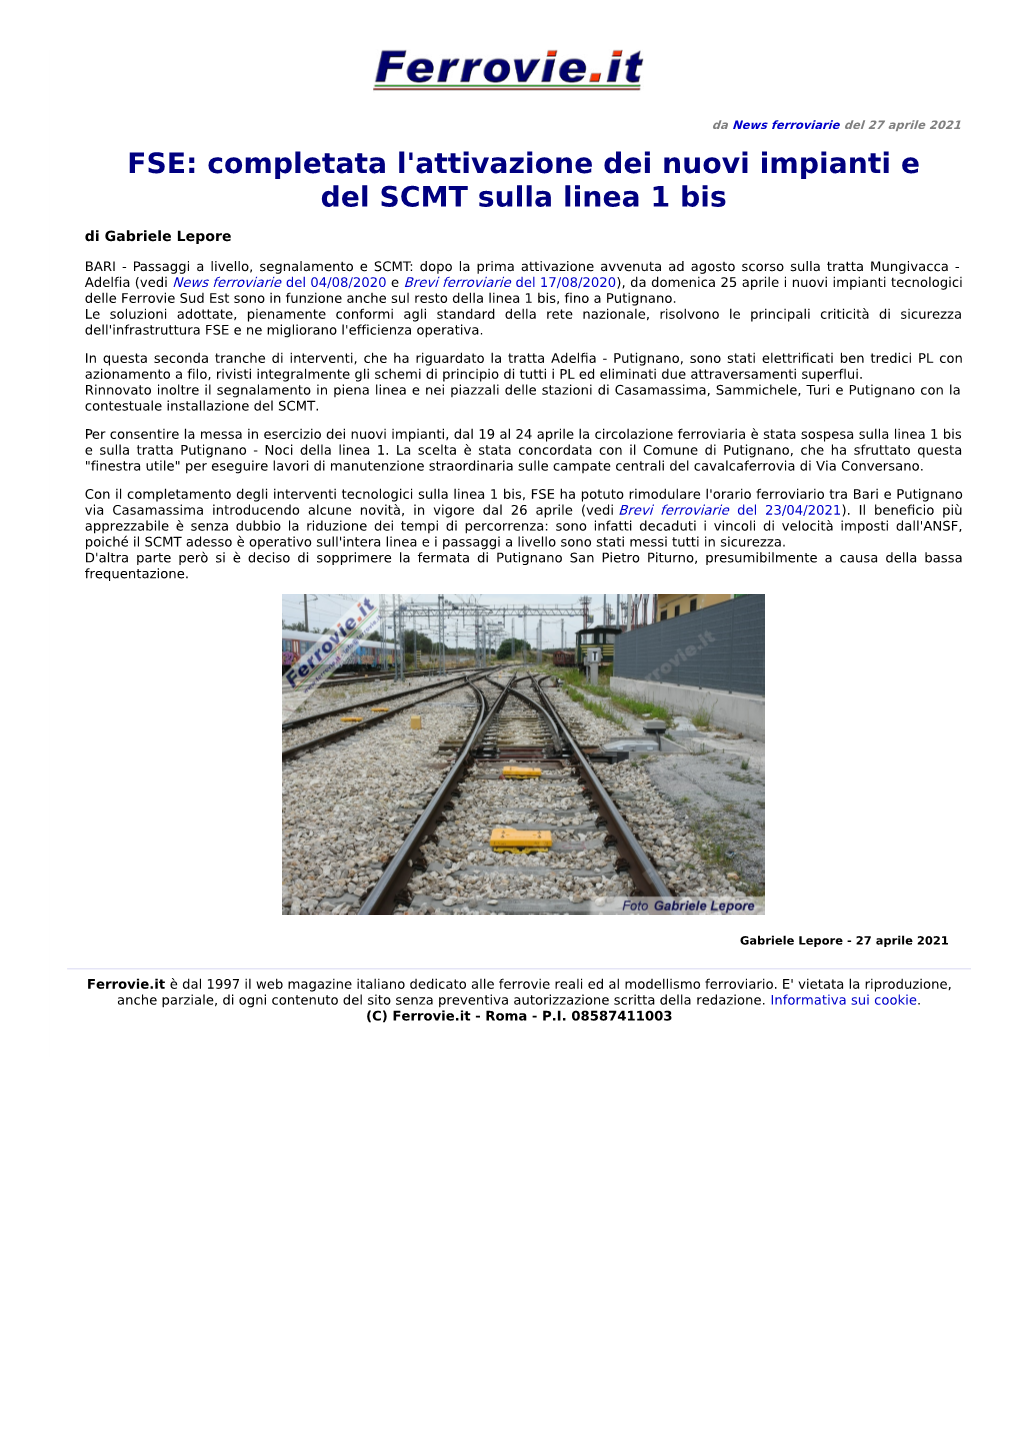 FSE: Completata L'attivazione Dei Nuovi Impianti E Del SCMT Sulla Linea 1 Bis Di Gabriele Lepore